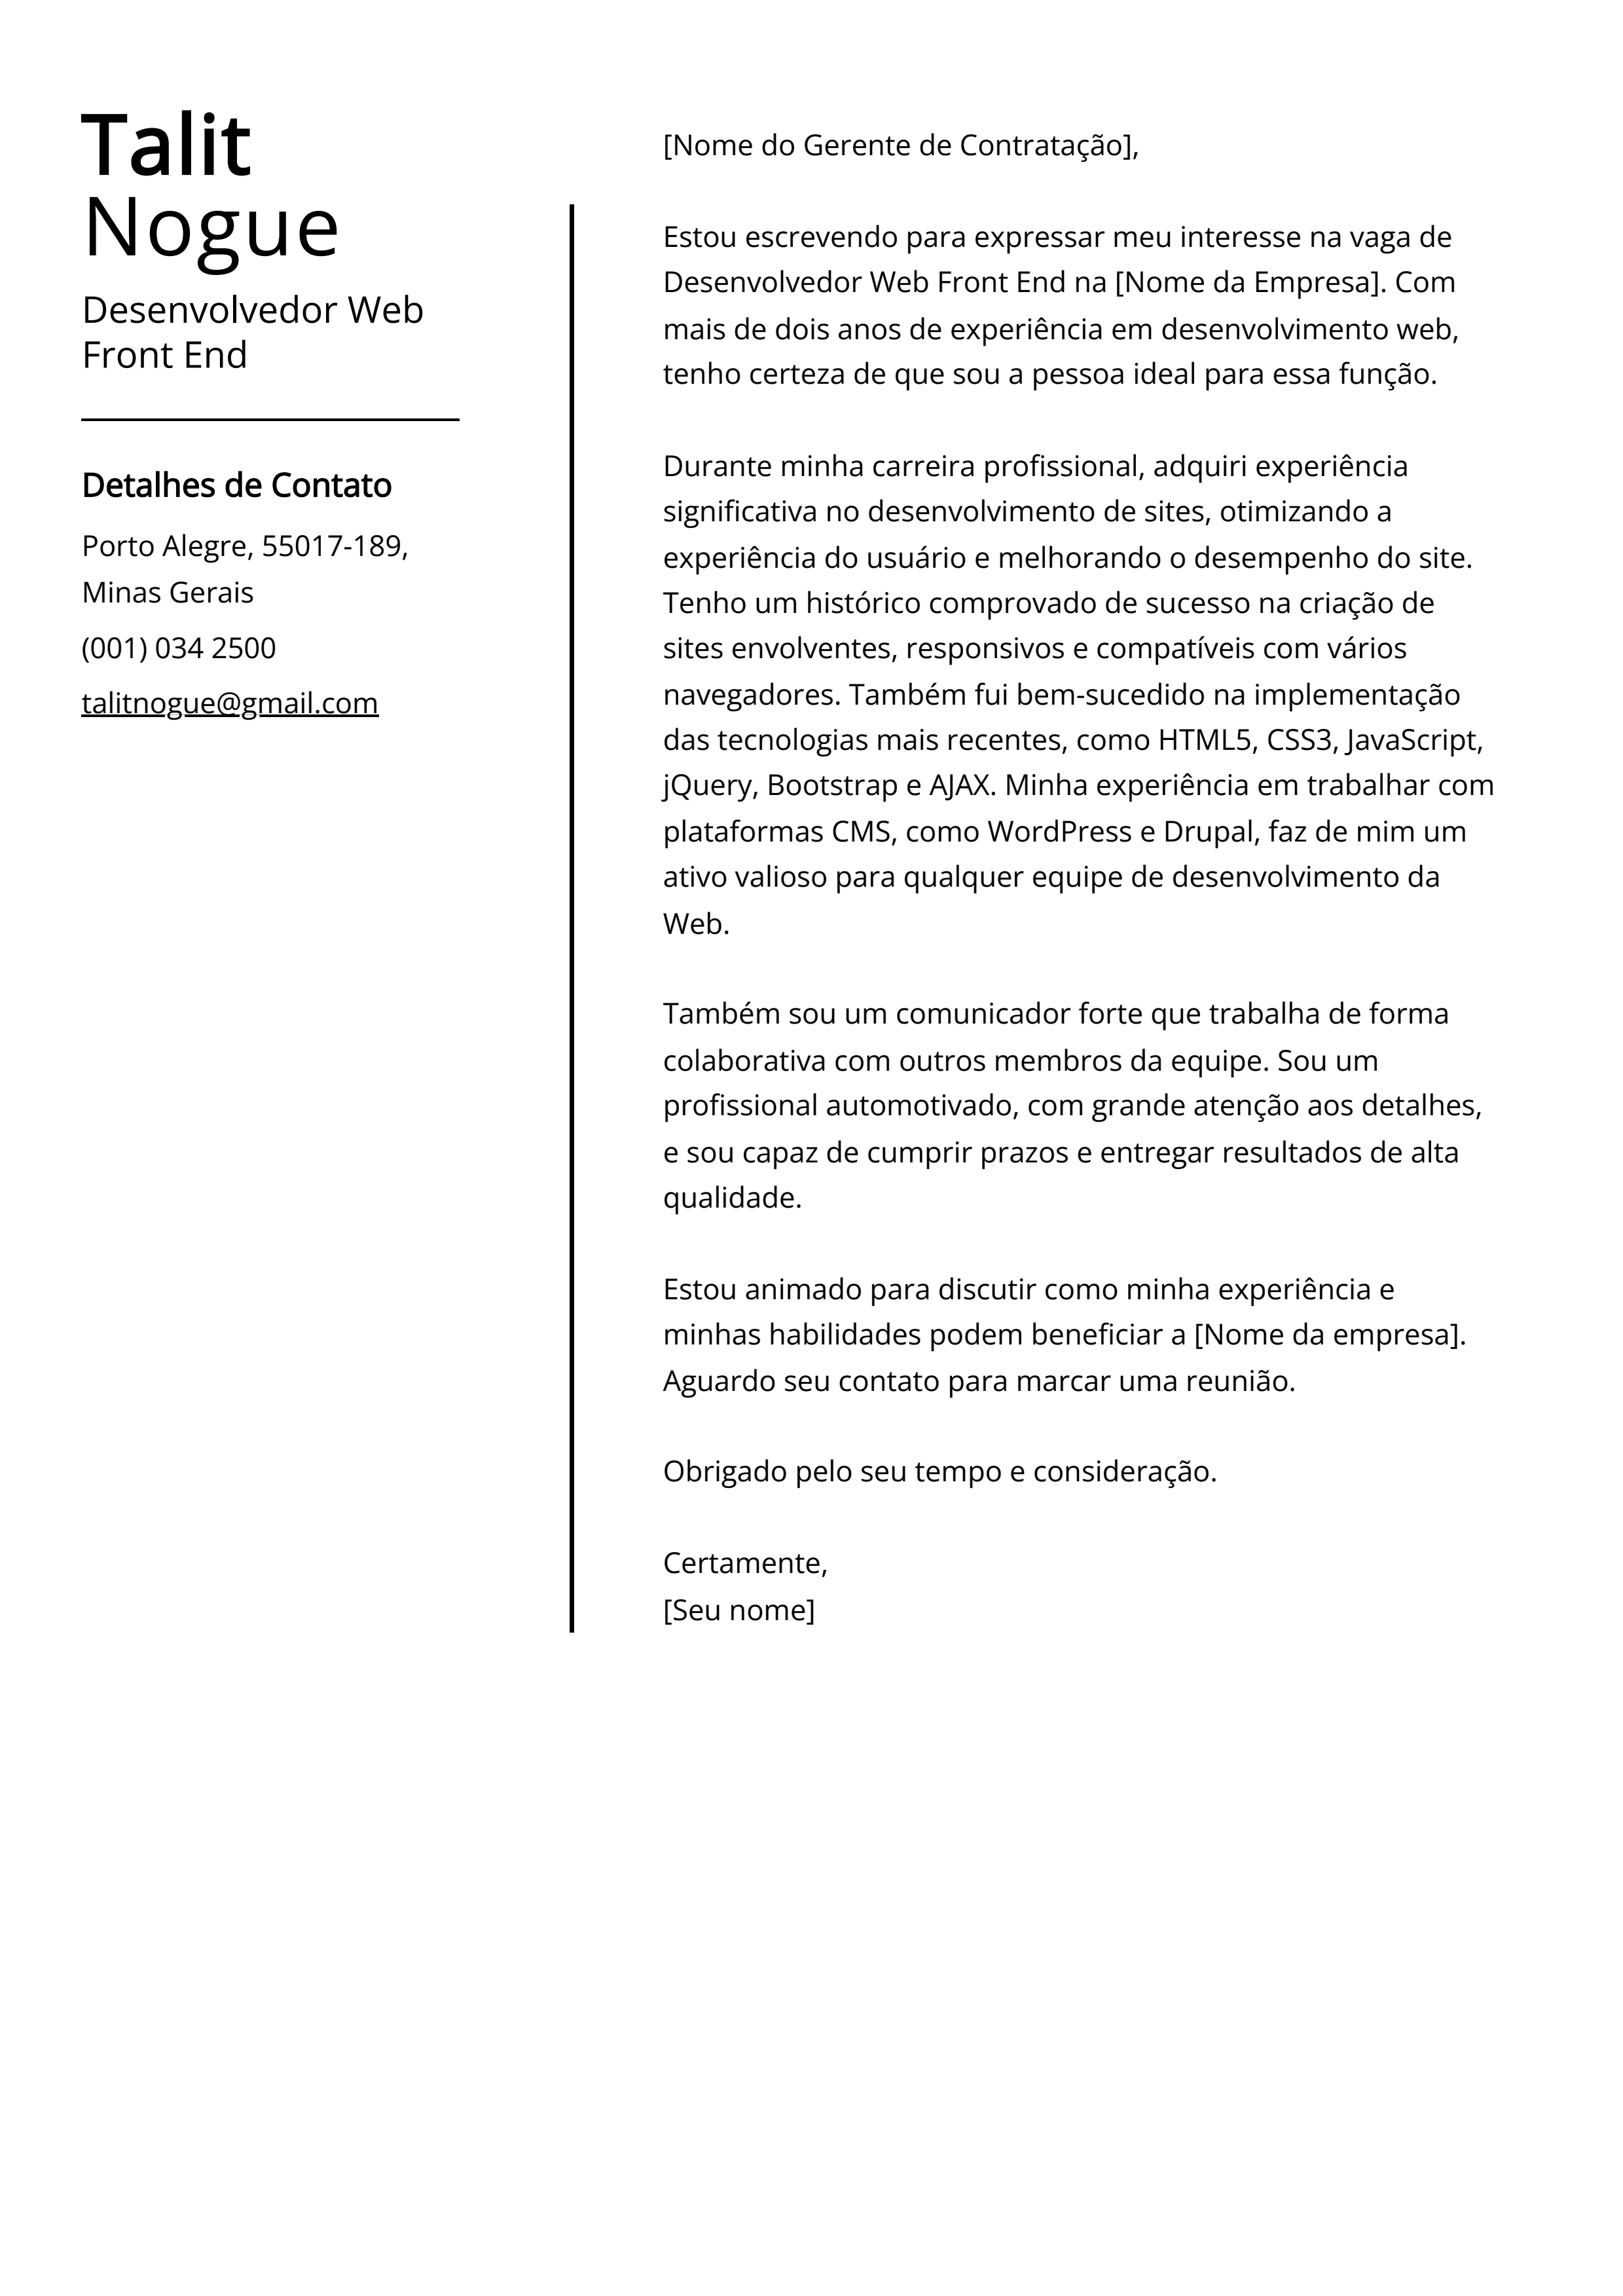 Exemplo de carta de apresentação do Desenvolvedor Web Front End